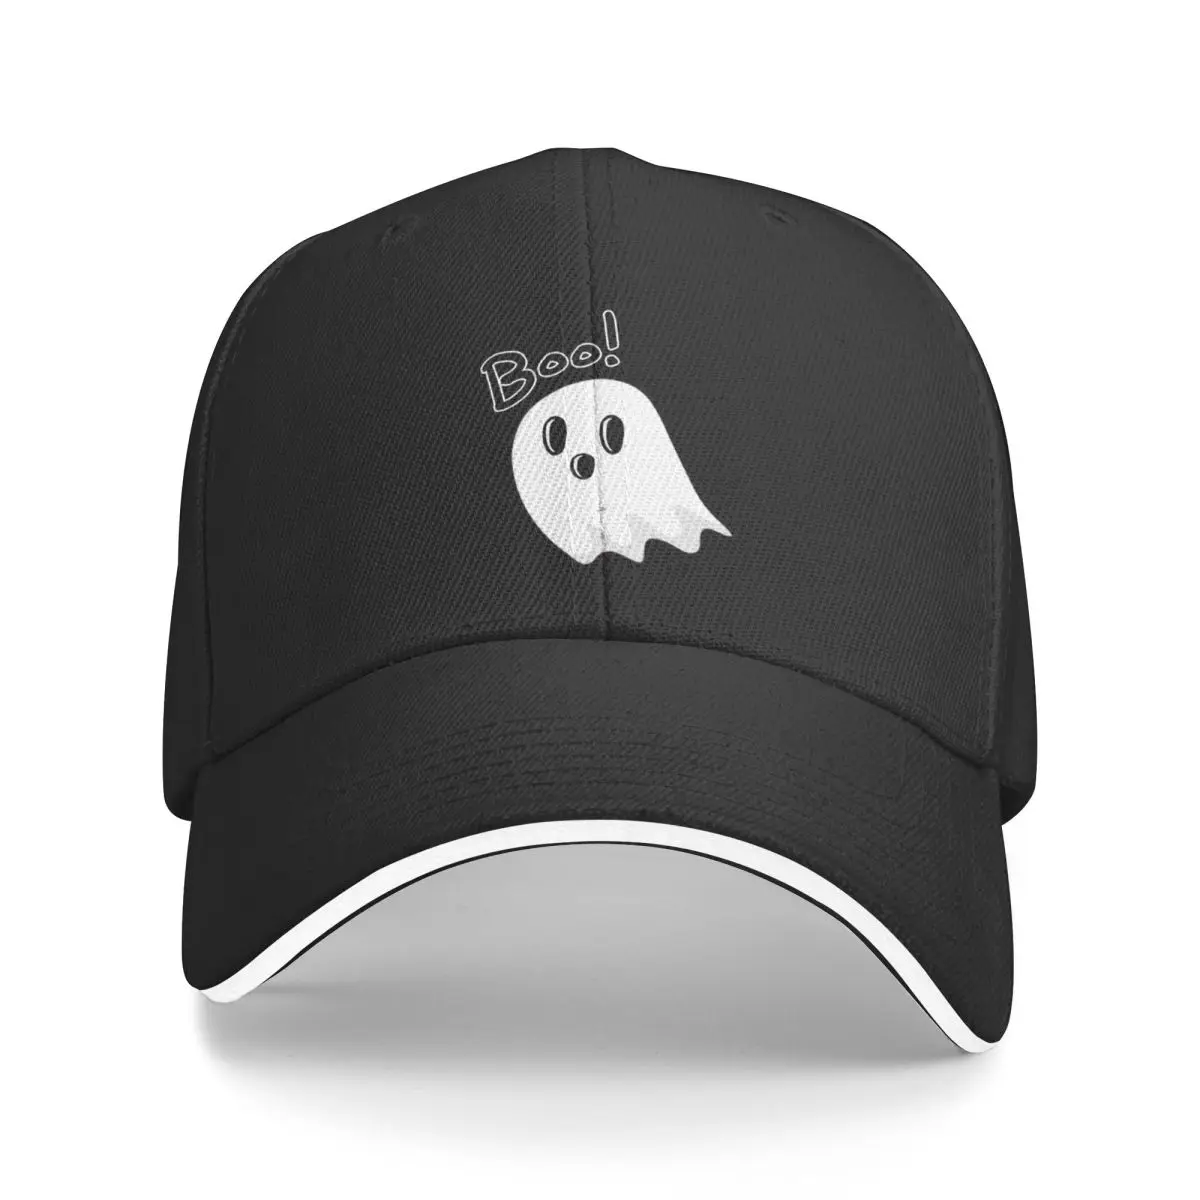 

New Cute Ghost Boo! Baseball Cap Trucker Cap Dropshipping Golf Cap Brand Man Caps Cap Woman Men's